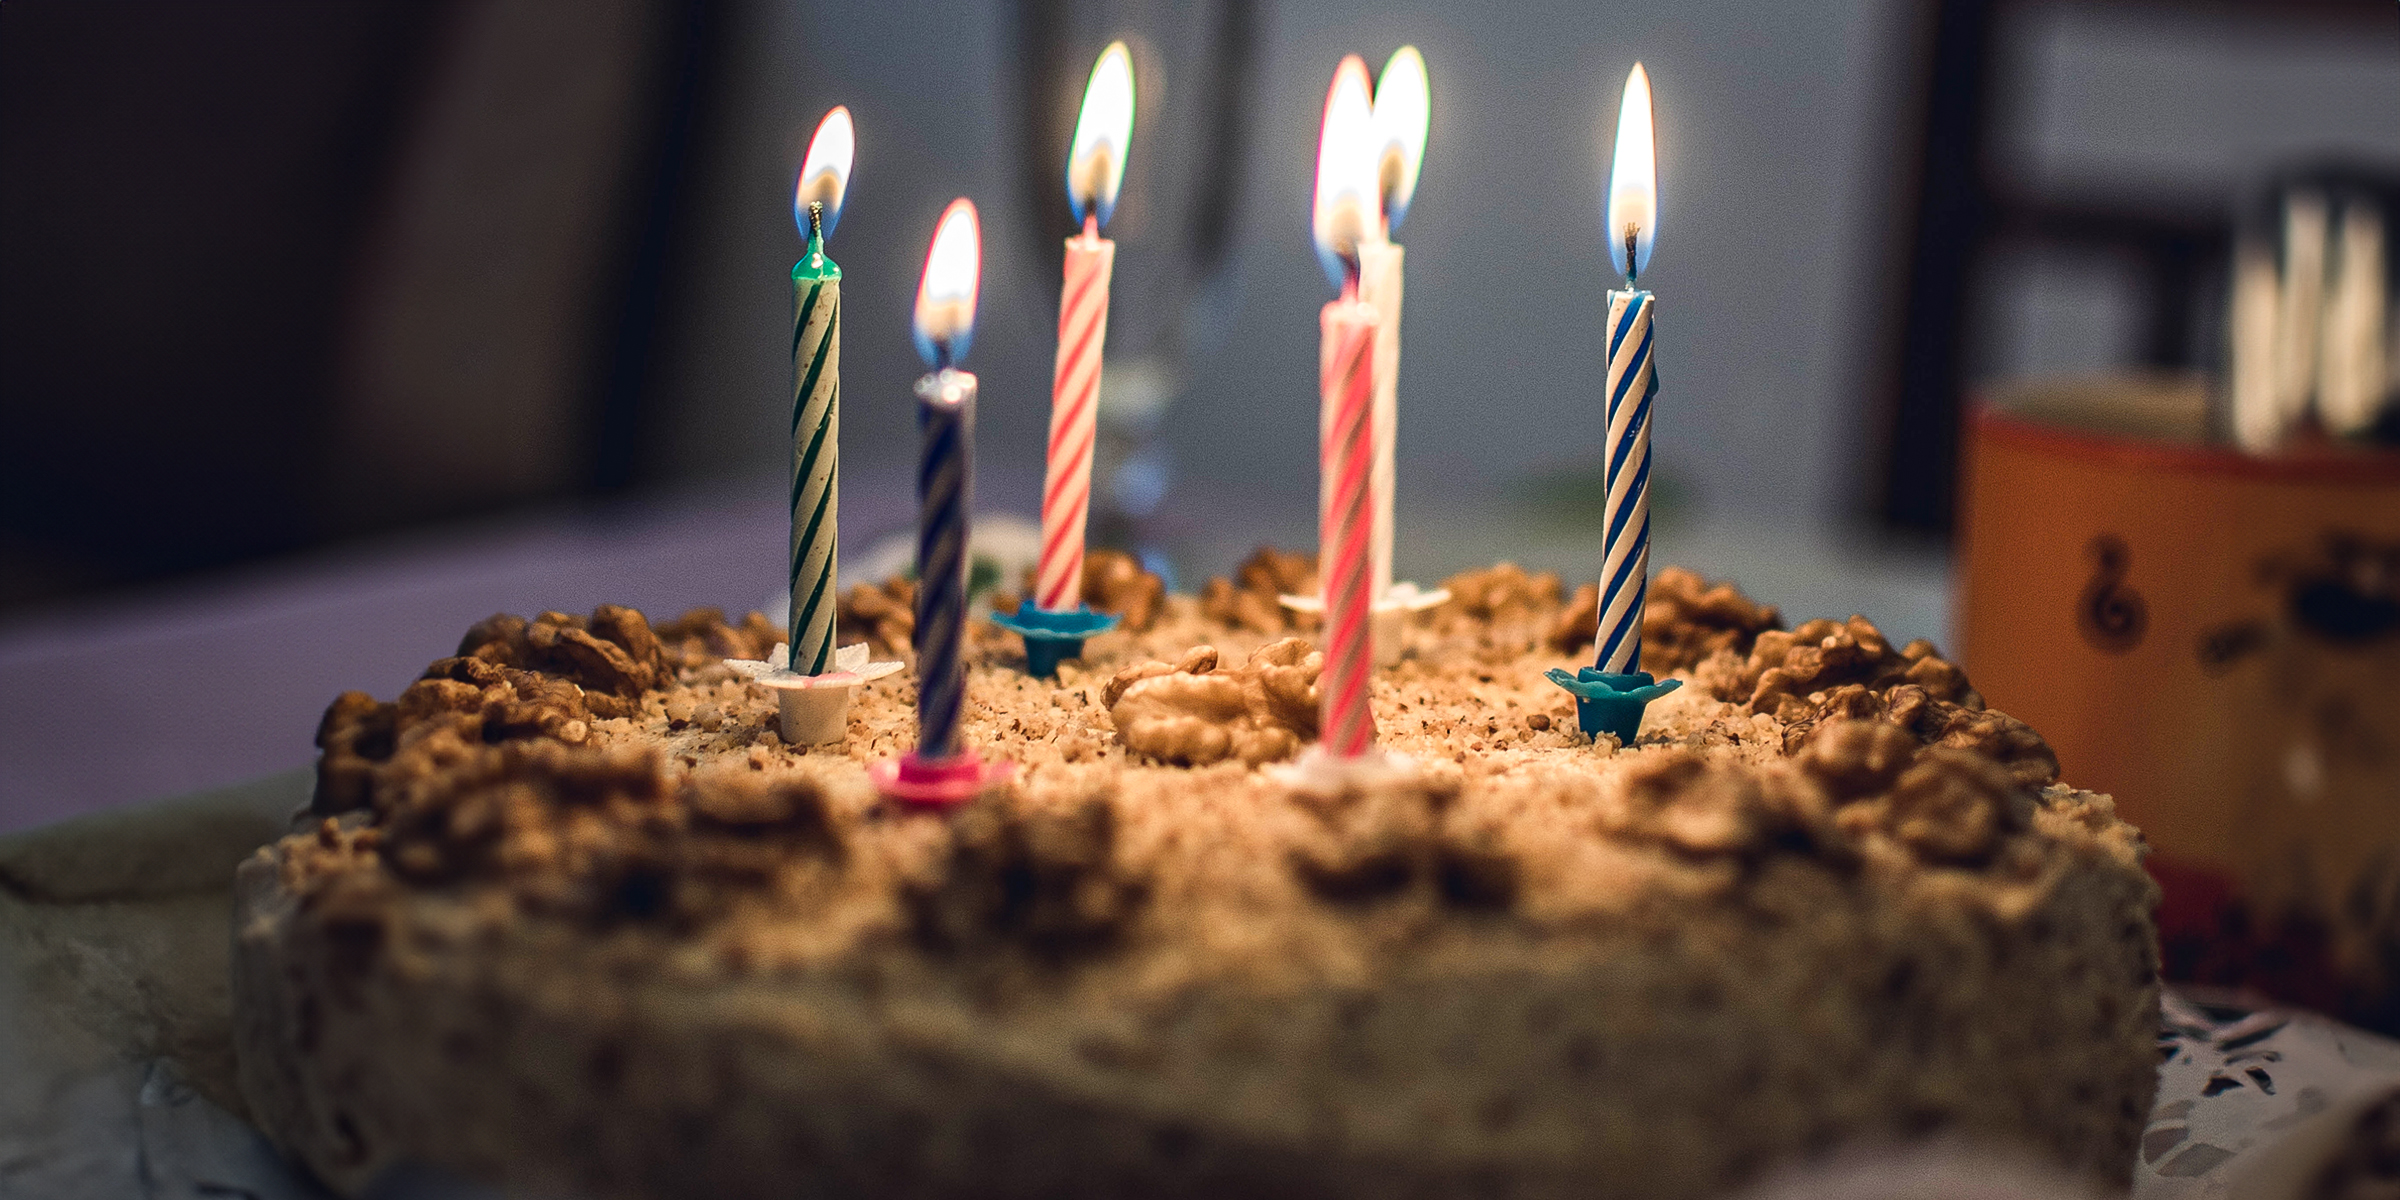 Ein Geburtstagskuchen mit Kerzen | Quelle: Shutterstock